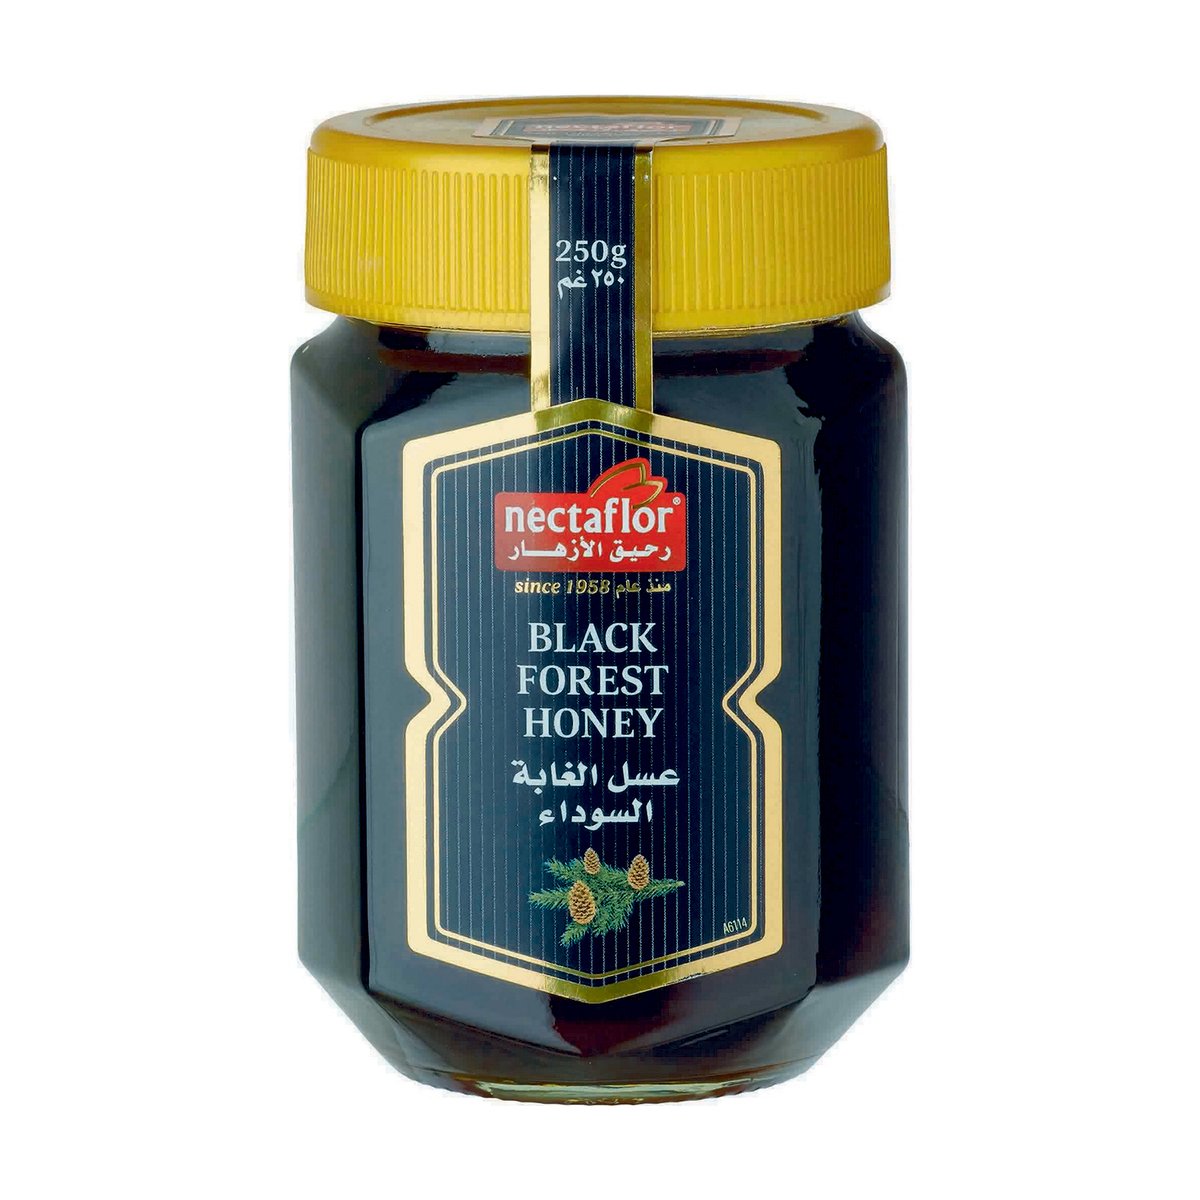 Nectaflor Black Forest Honey 250g